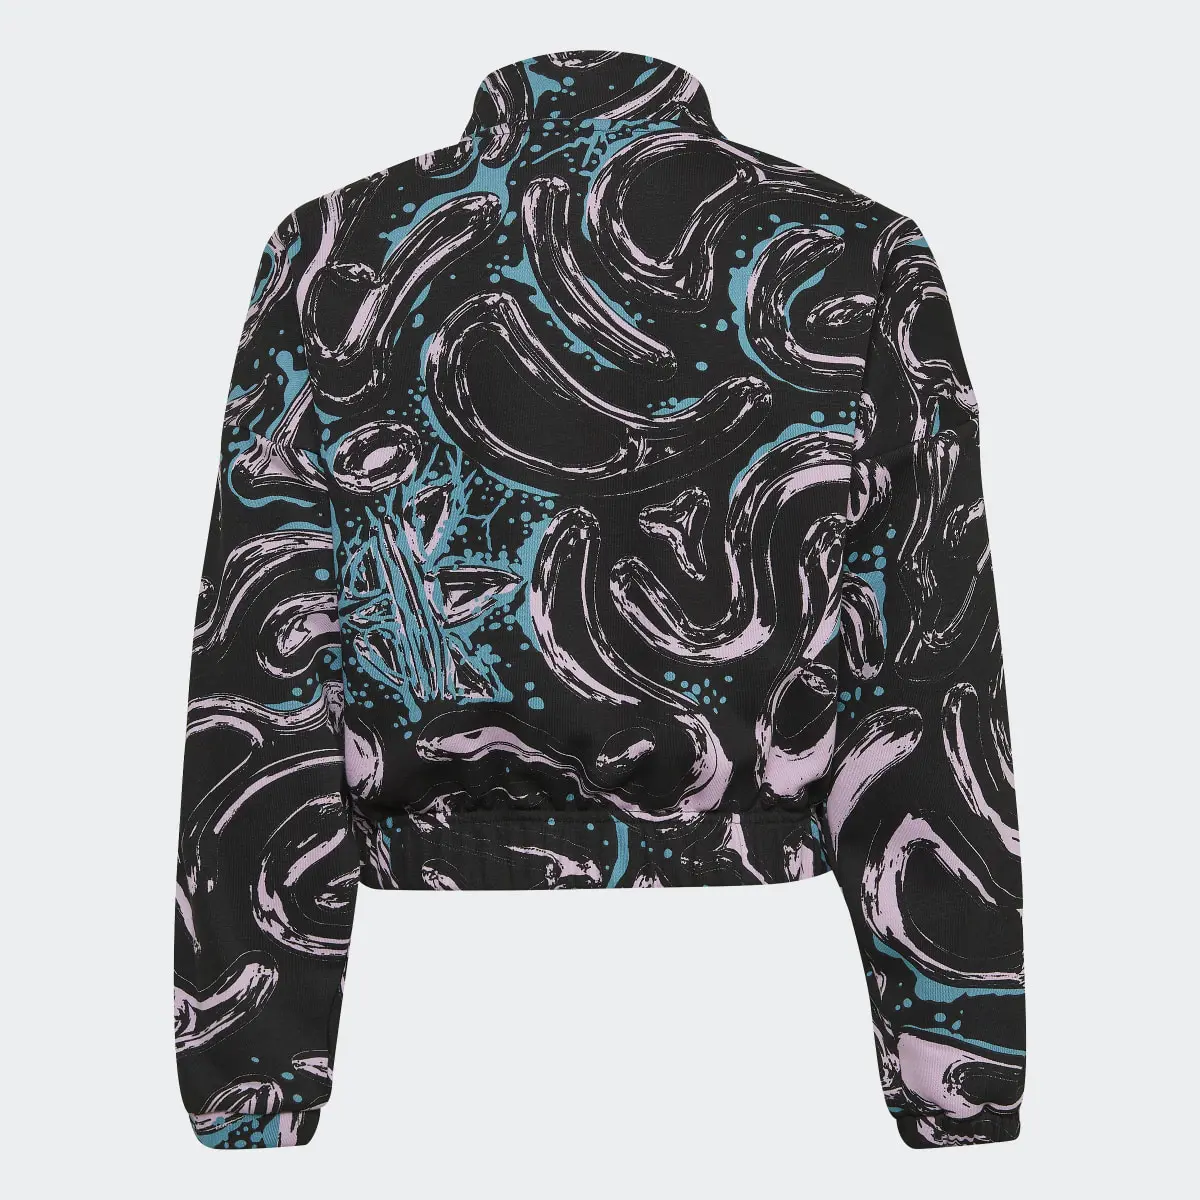 Adidas Allover Print Half-Zip Crop Crew Sweatshirt. 2